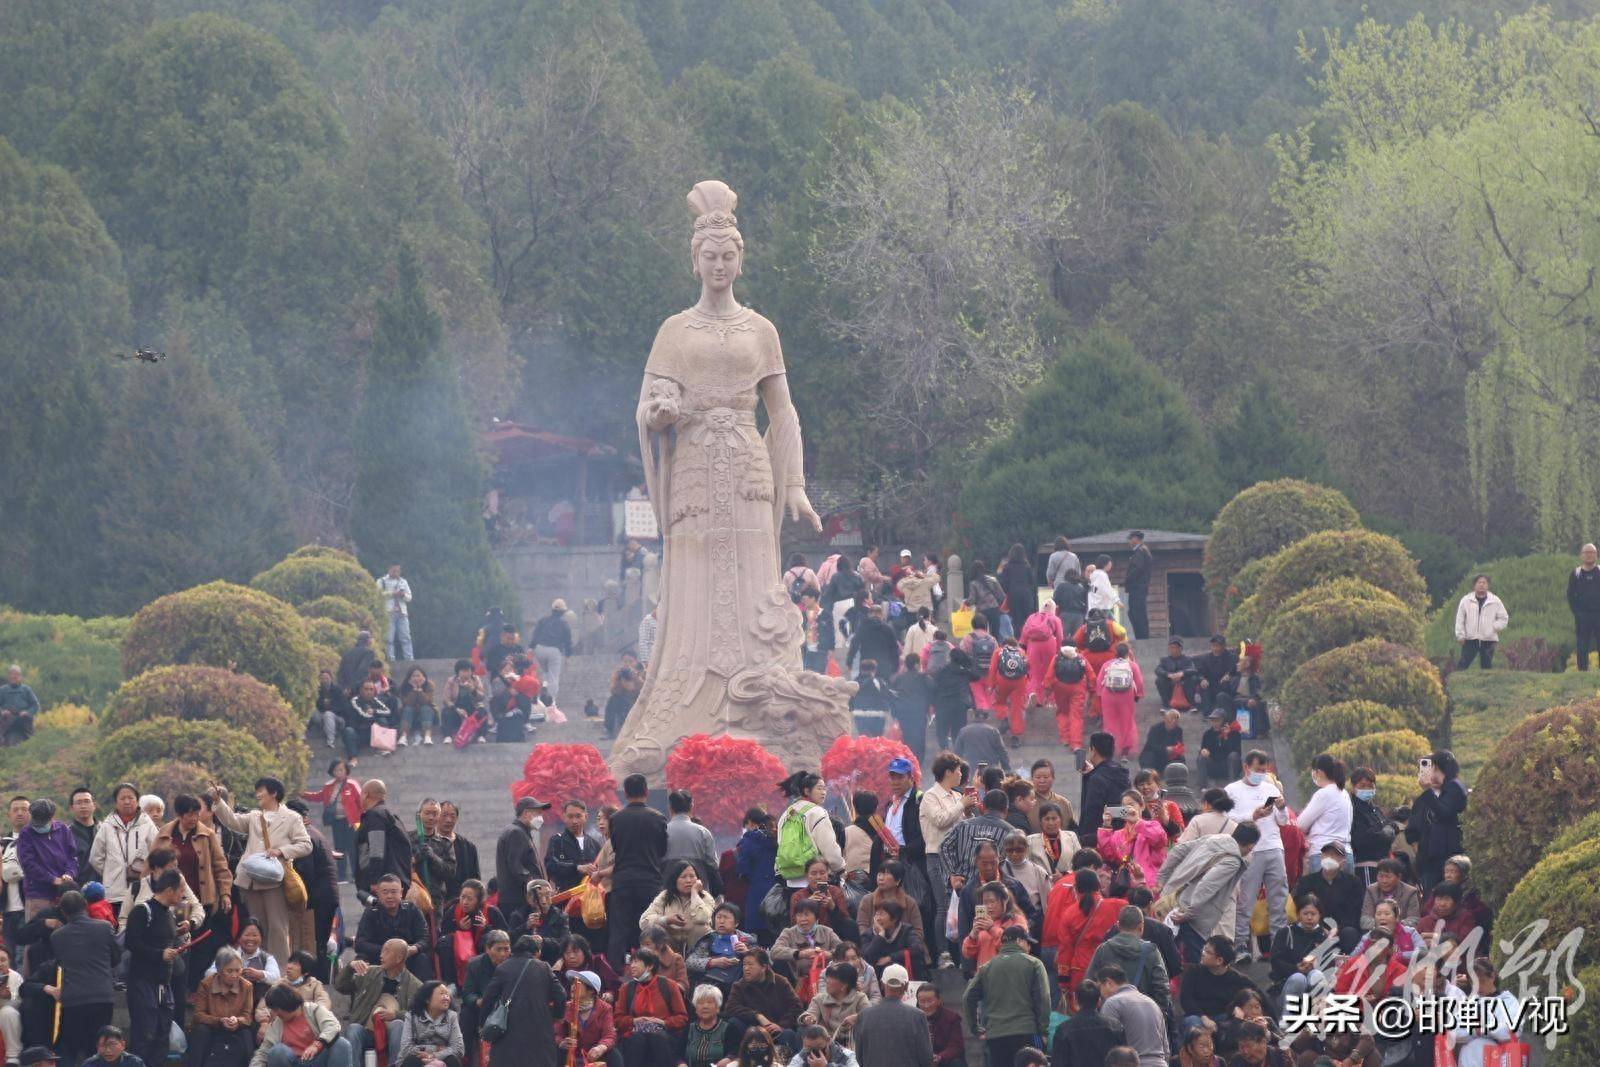 一年一度的娲皇宫庙会在涉县娲皇宫景区举行,庙会首日就吸引近万名